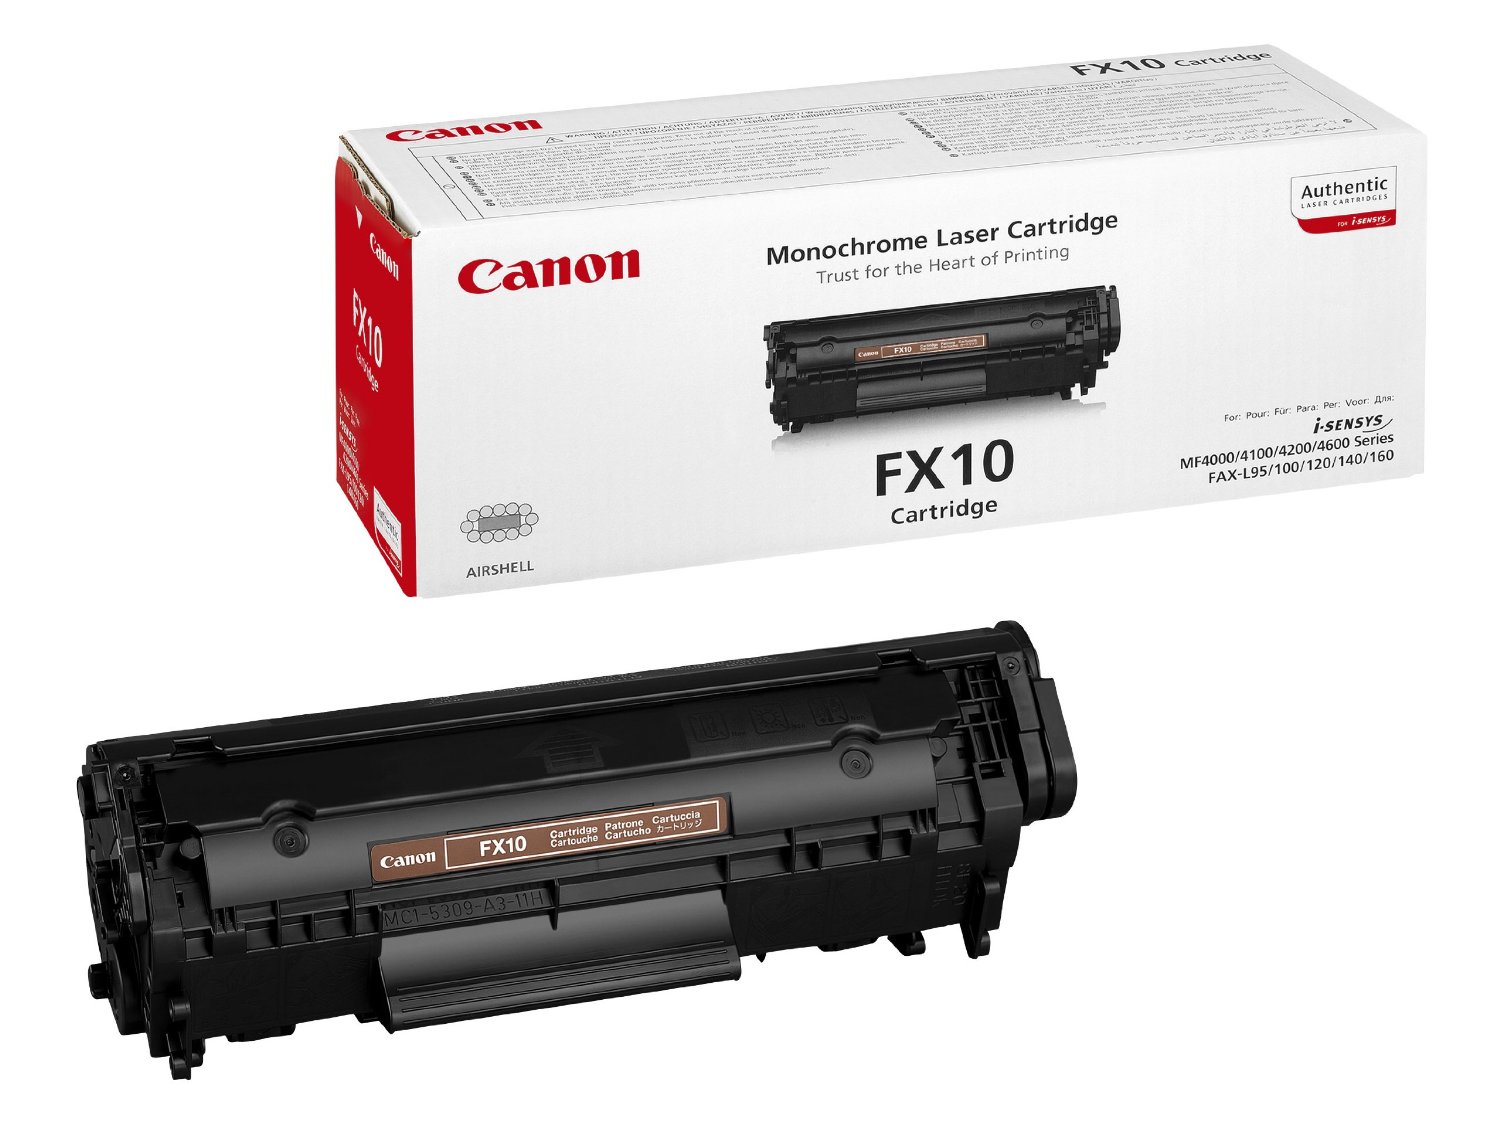 Canon FX-10 muadil toner FX 10 yazıcı toneri kartuş fiyatı